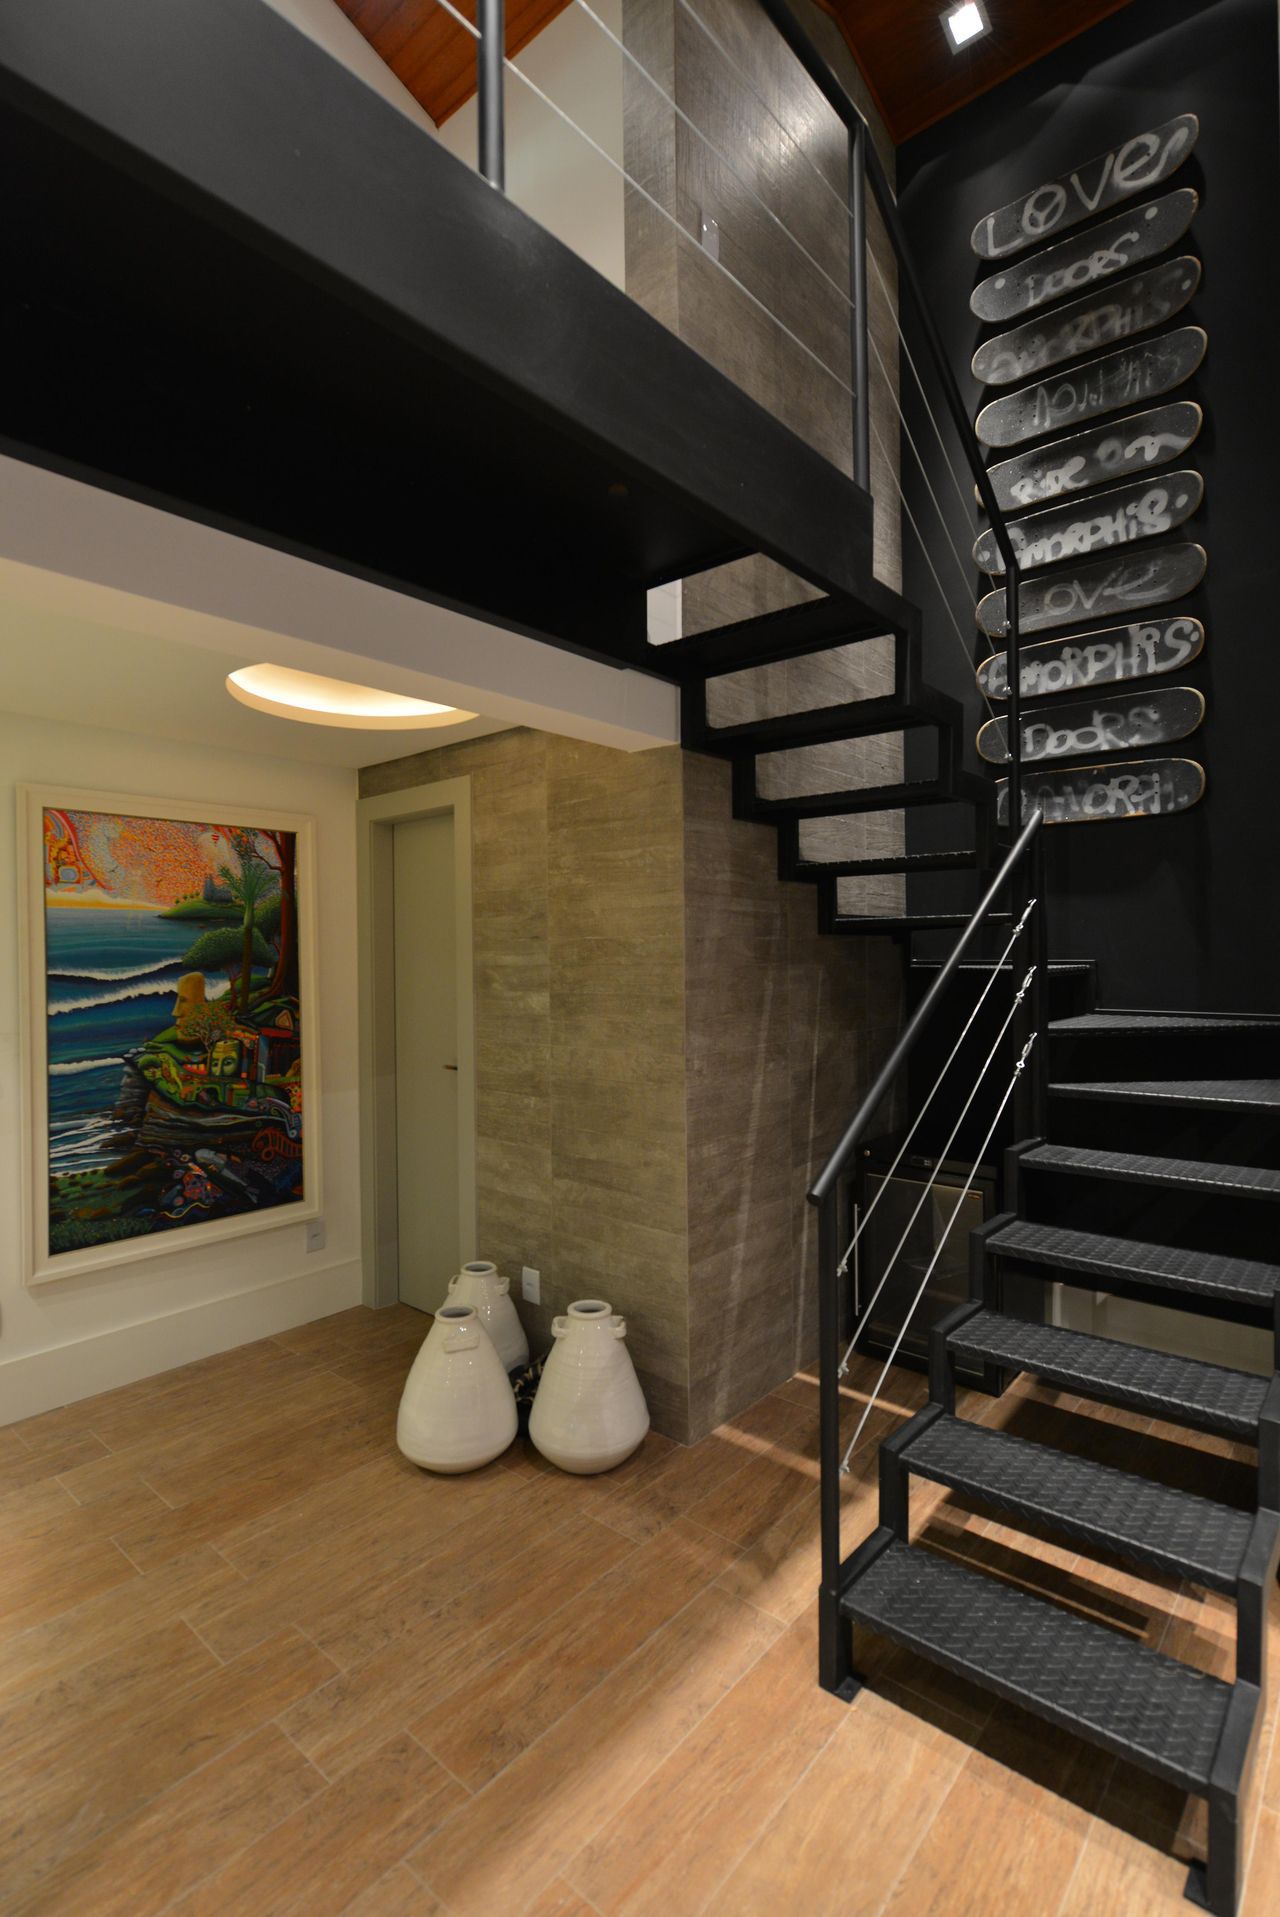 Escadas modernas de ferro são perfeitas para decoração industrial